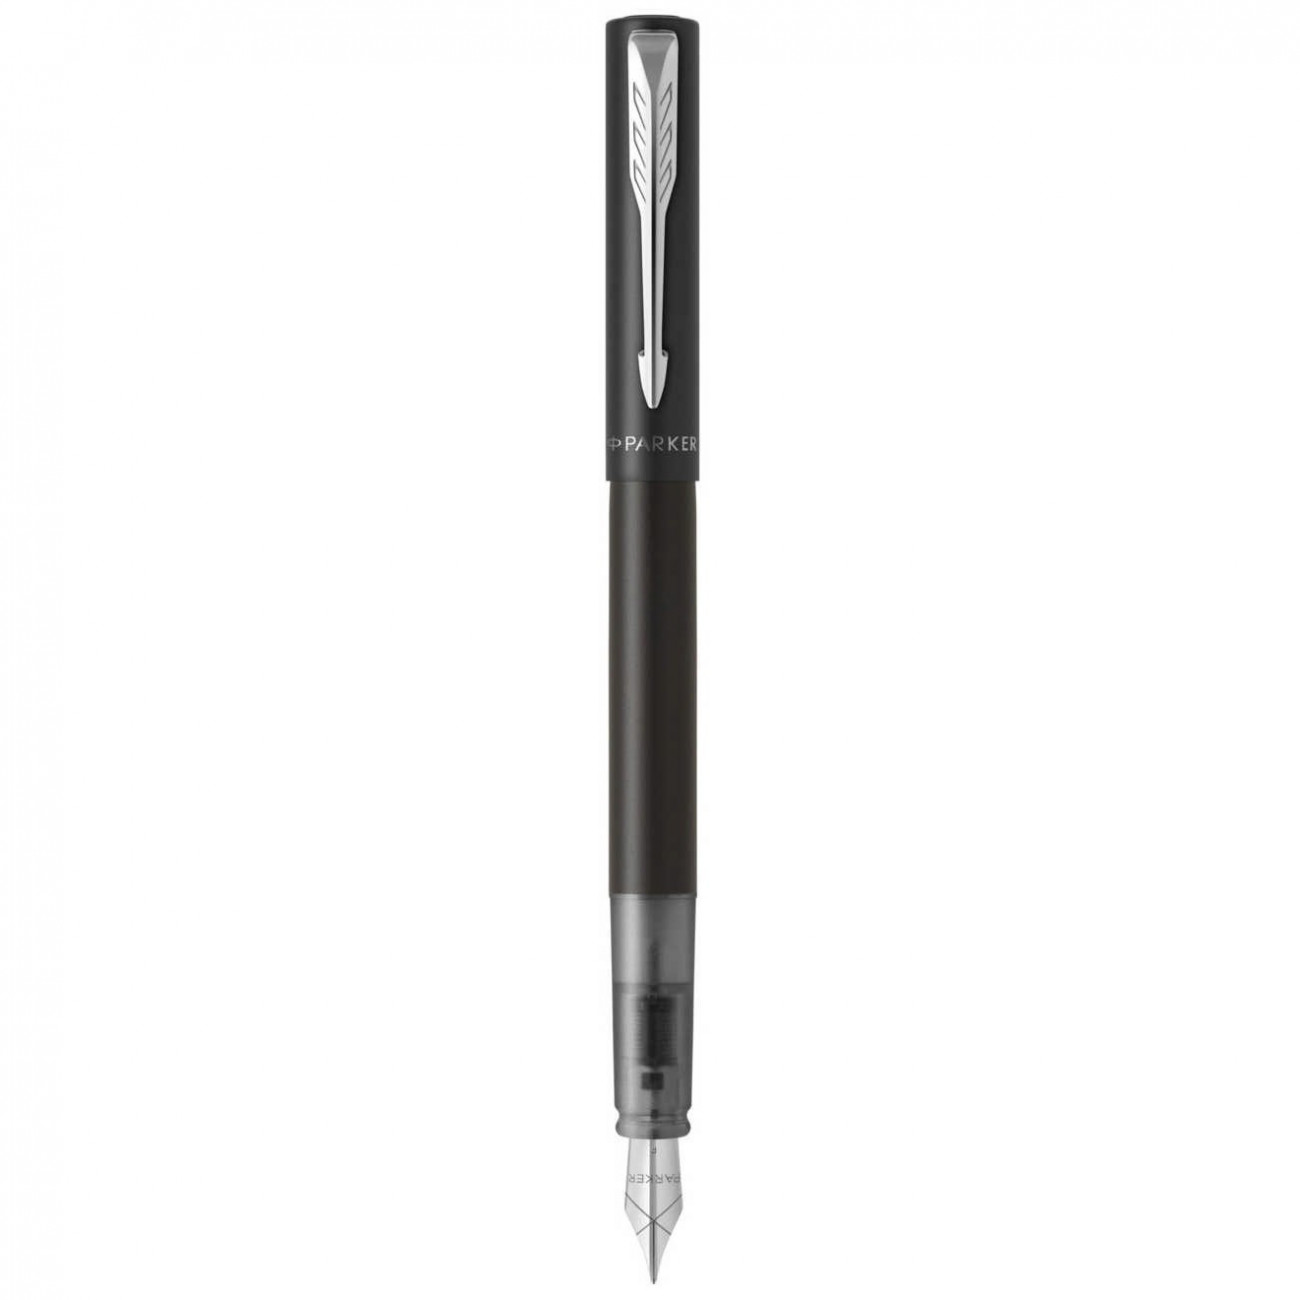 Перьевая ручка Parker Vector XL F21 Black